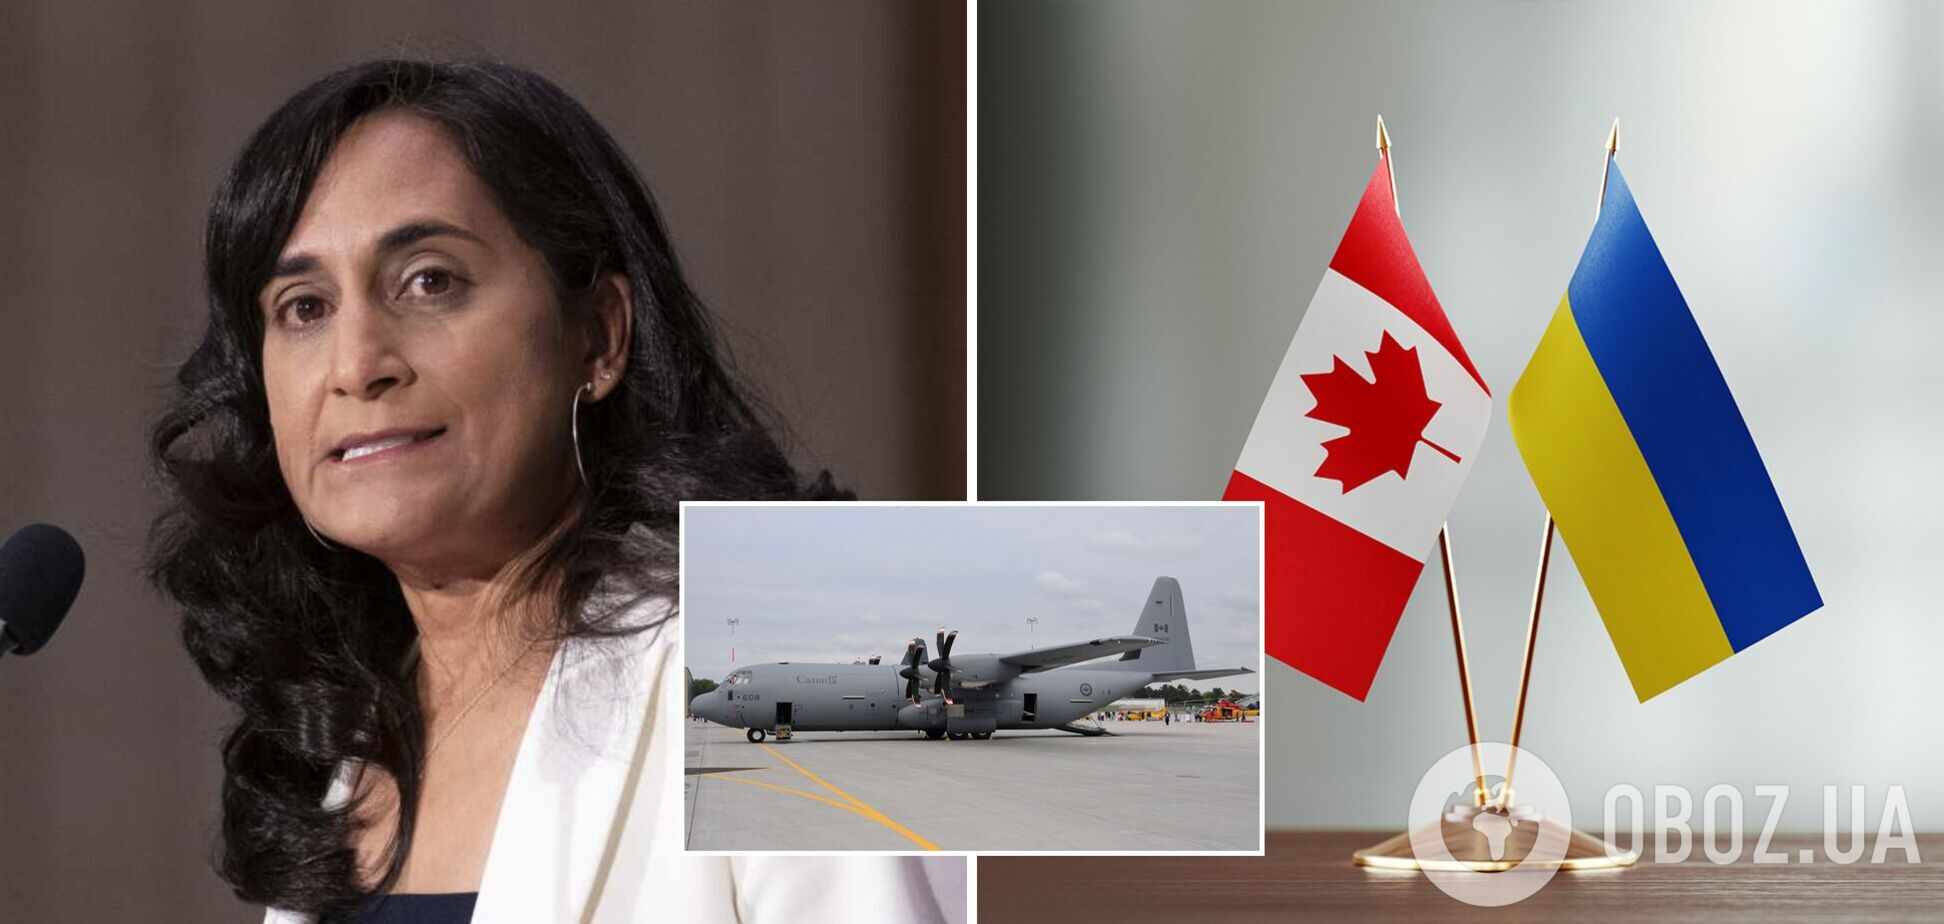 Канада выделит еще один самолет для доставки военной помощи Украине